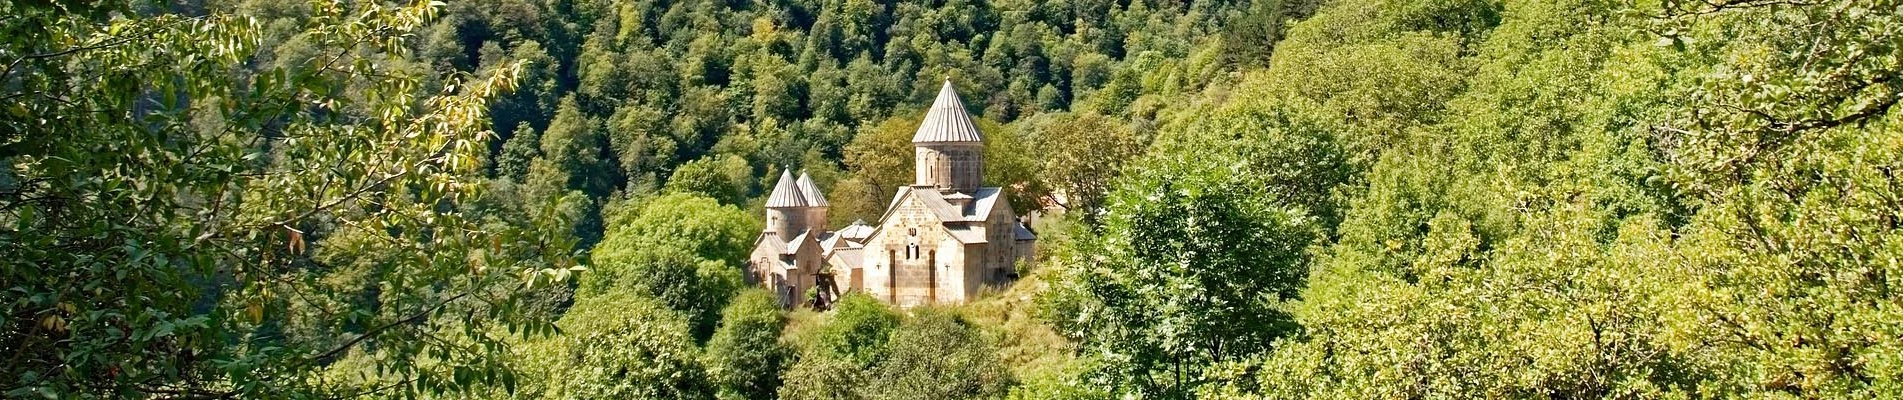 Что вы увидите в путешествии в Армению